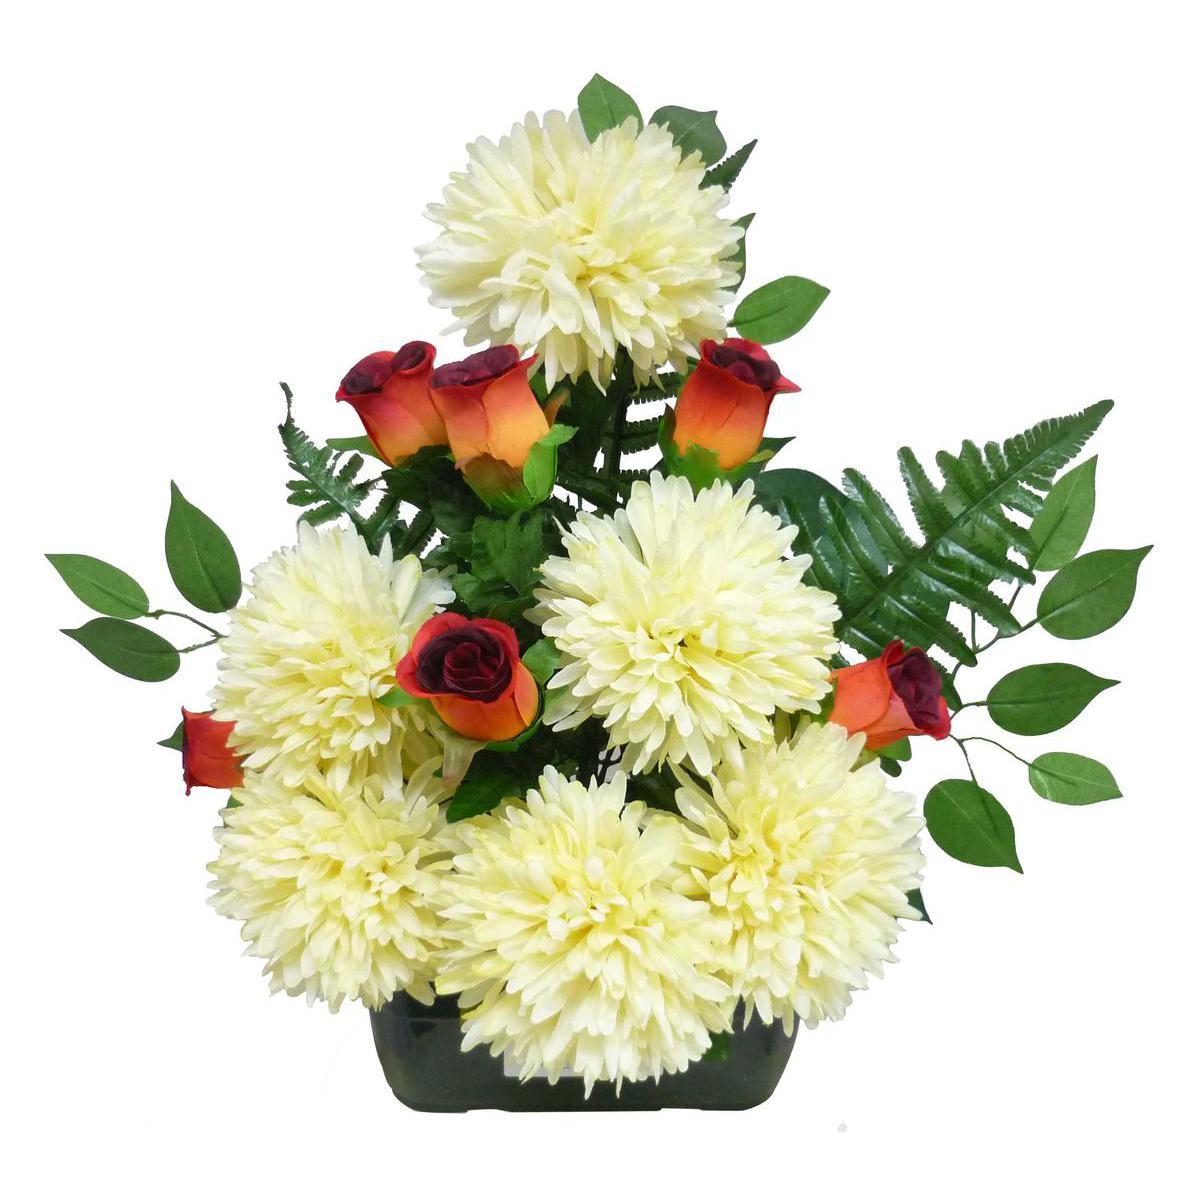 Jardinière boutons de roses et chrysanthèmes - Polyester - H 53 cm - Différents coloris